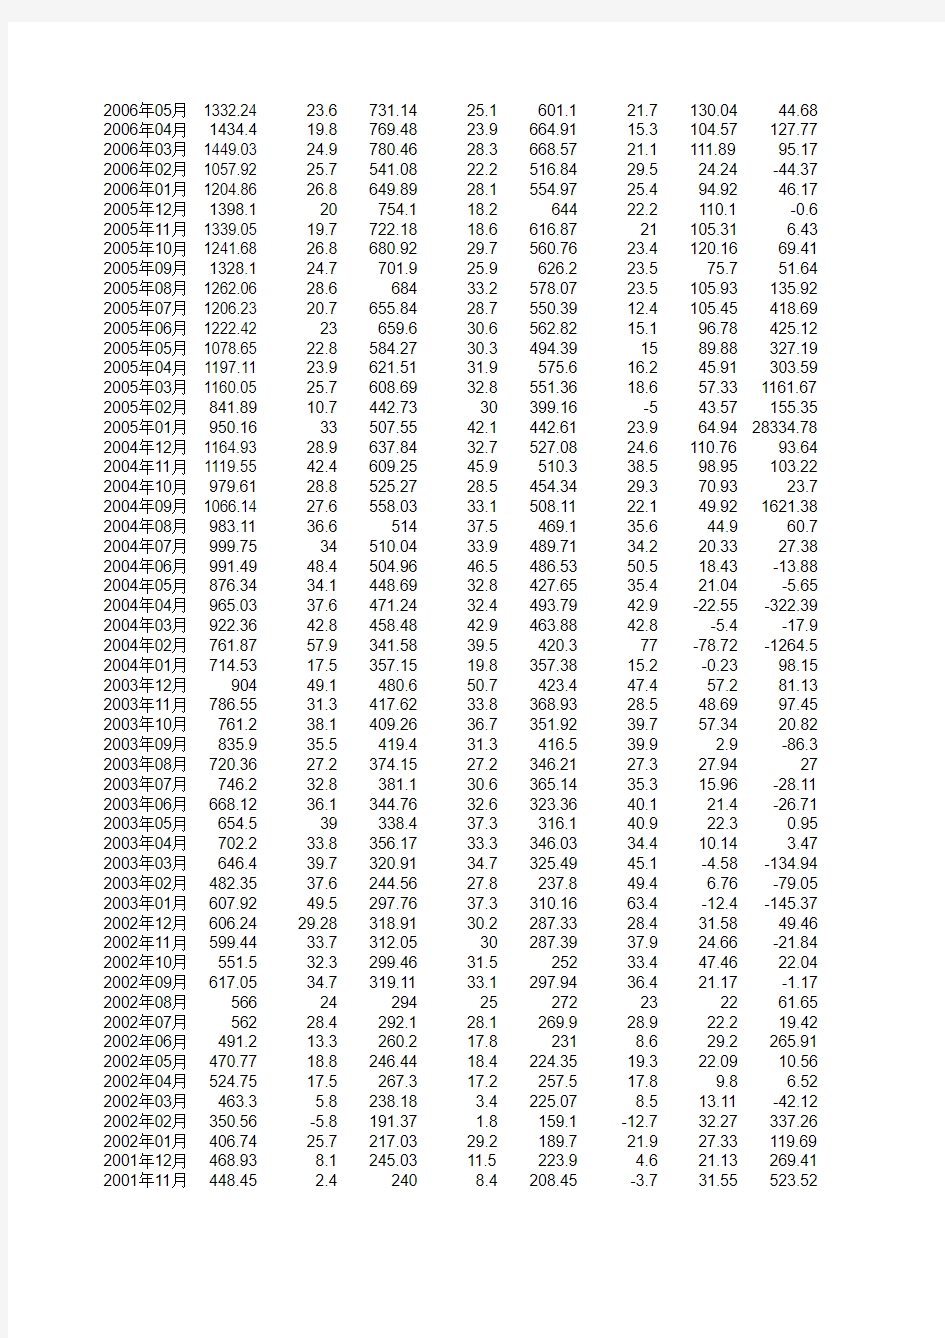 进出口贸易数据1997-2010月度数据